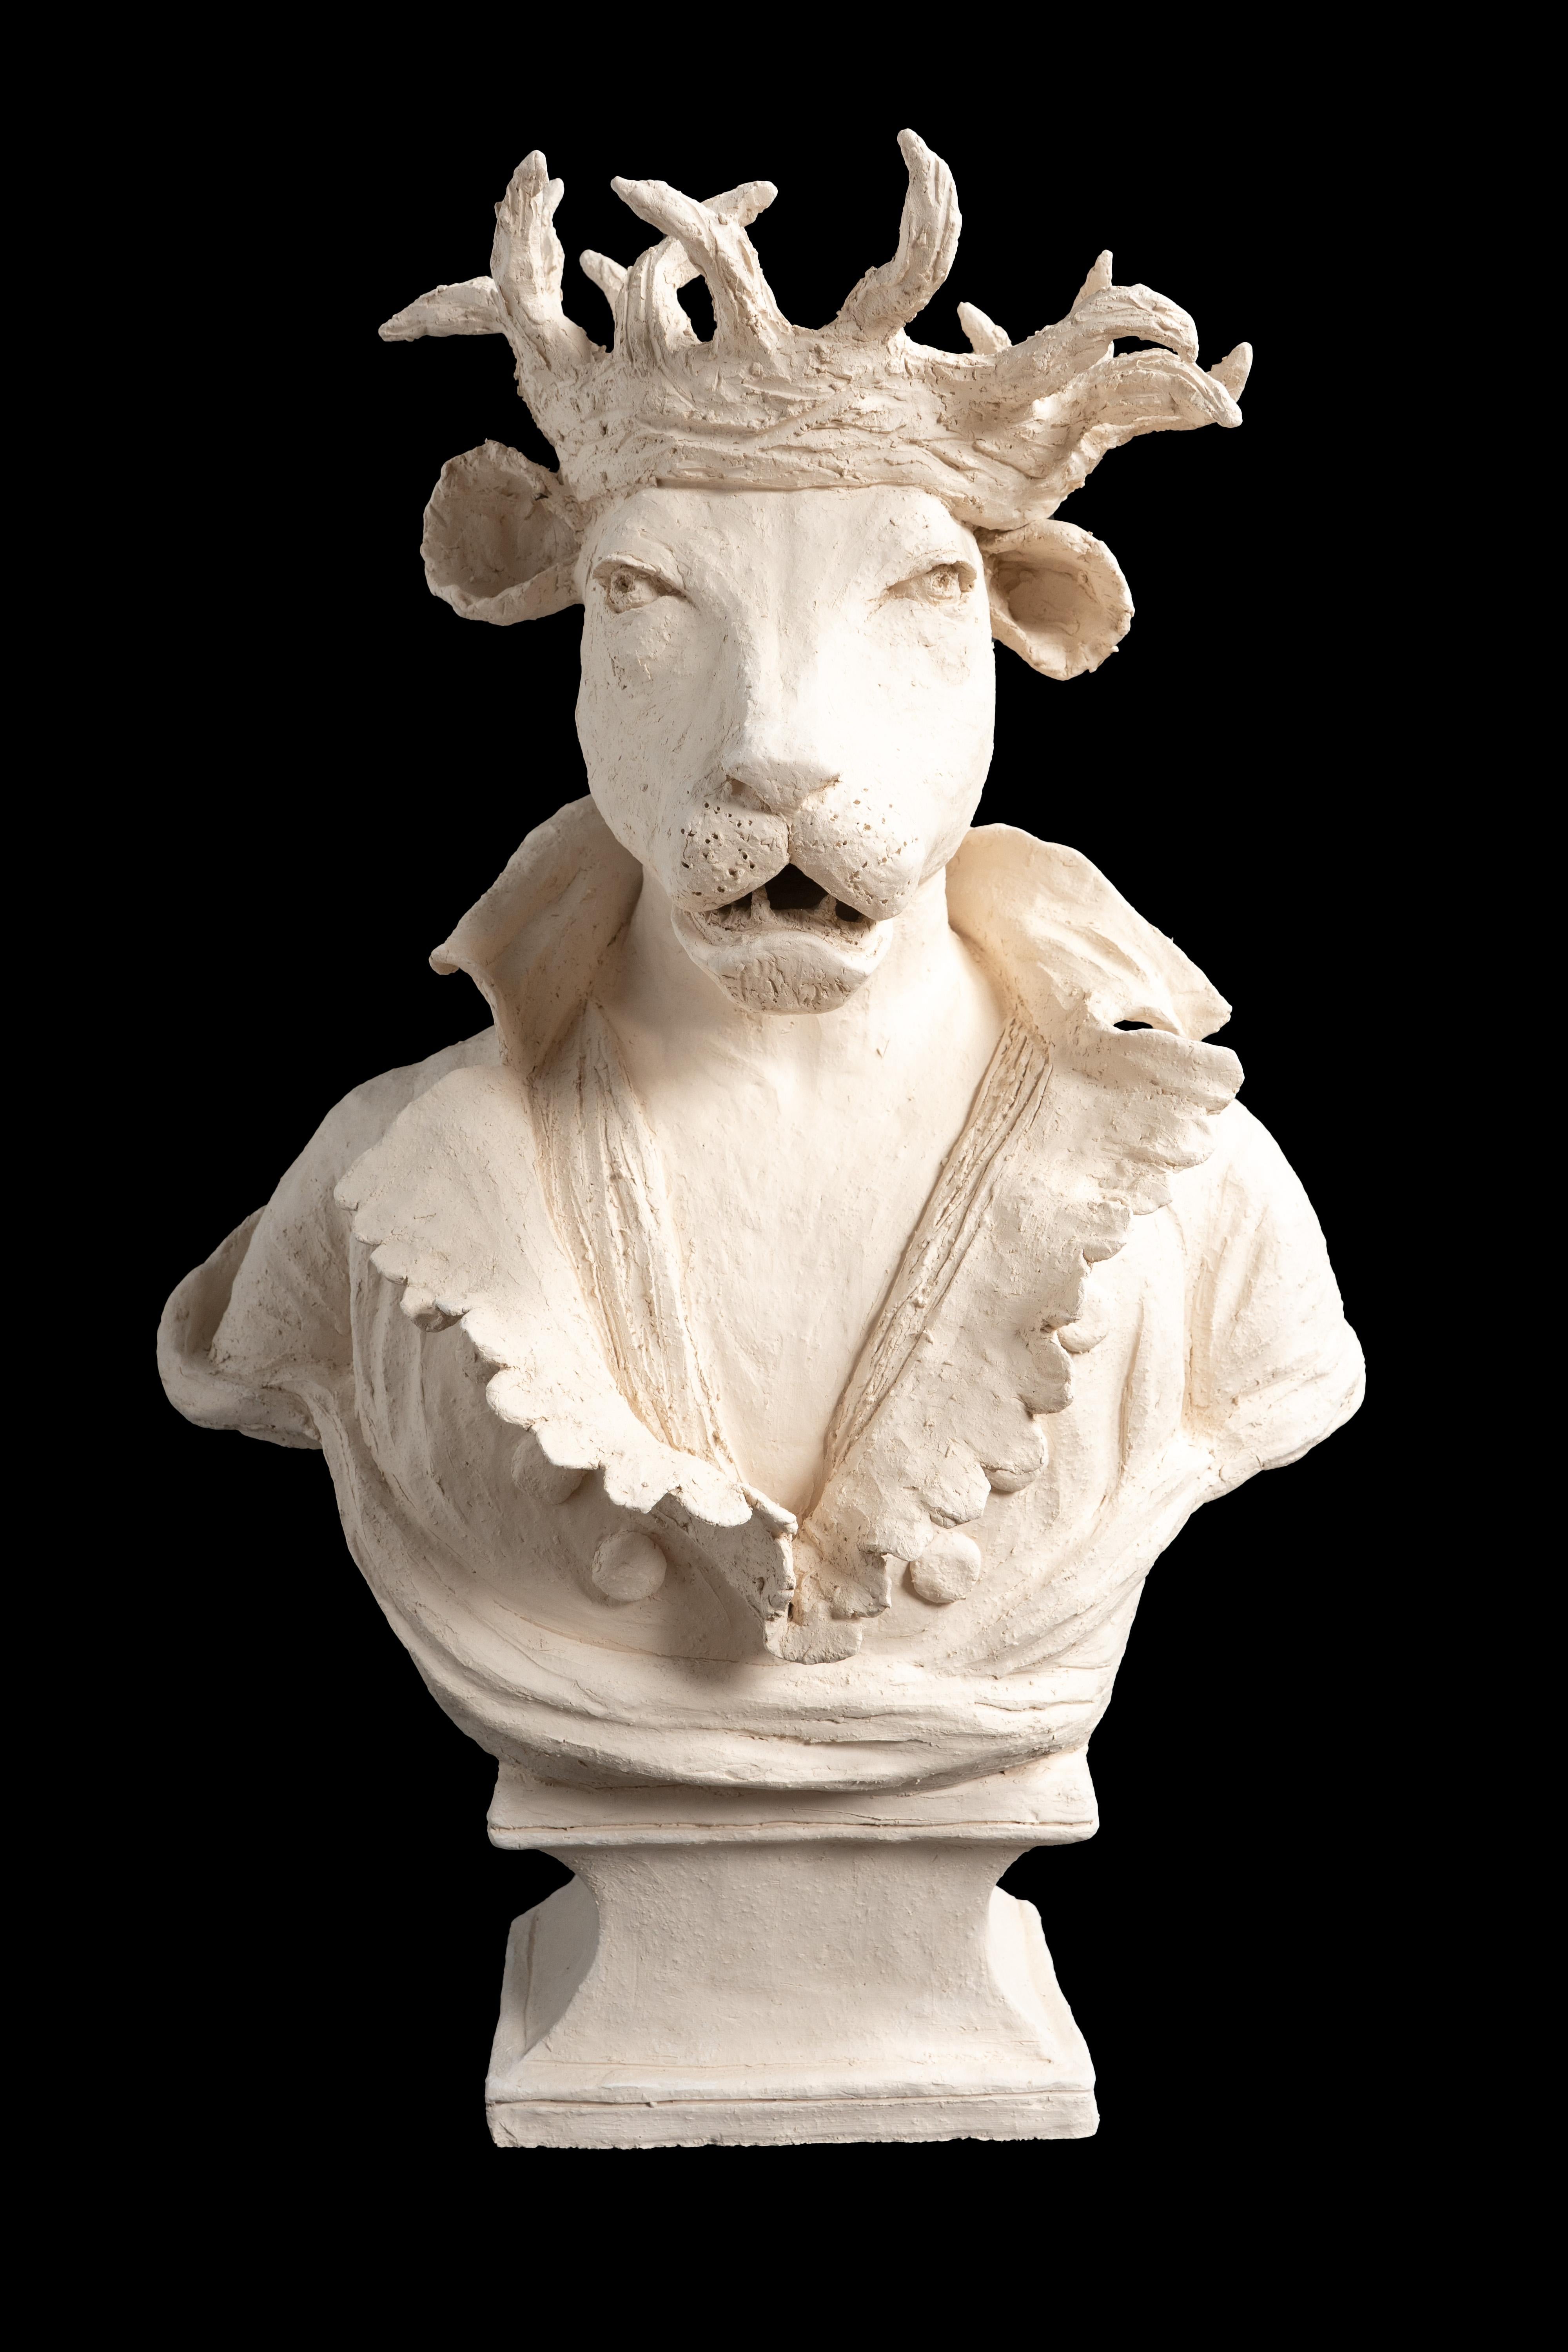 Figura antropomorfa de terracota de un león de montaña con corona de espinas y traje del siglo XIX, de Laurence Lenglare

Medidas 19